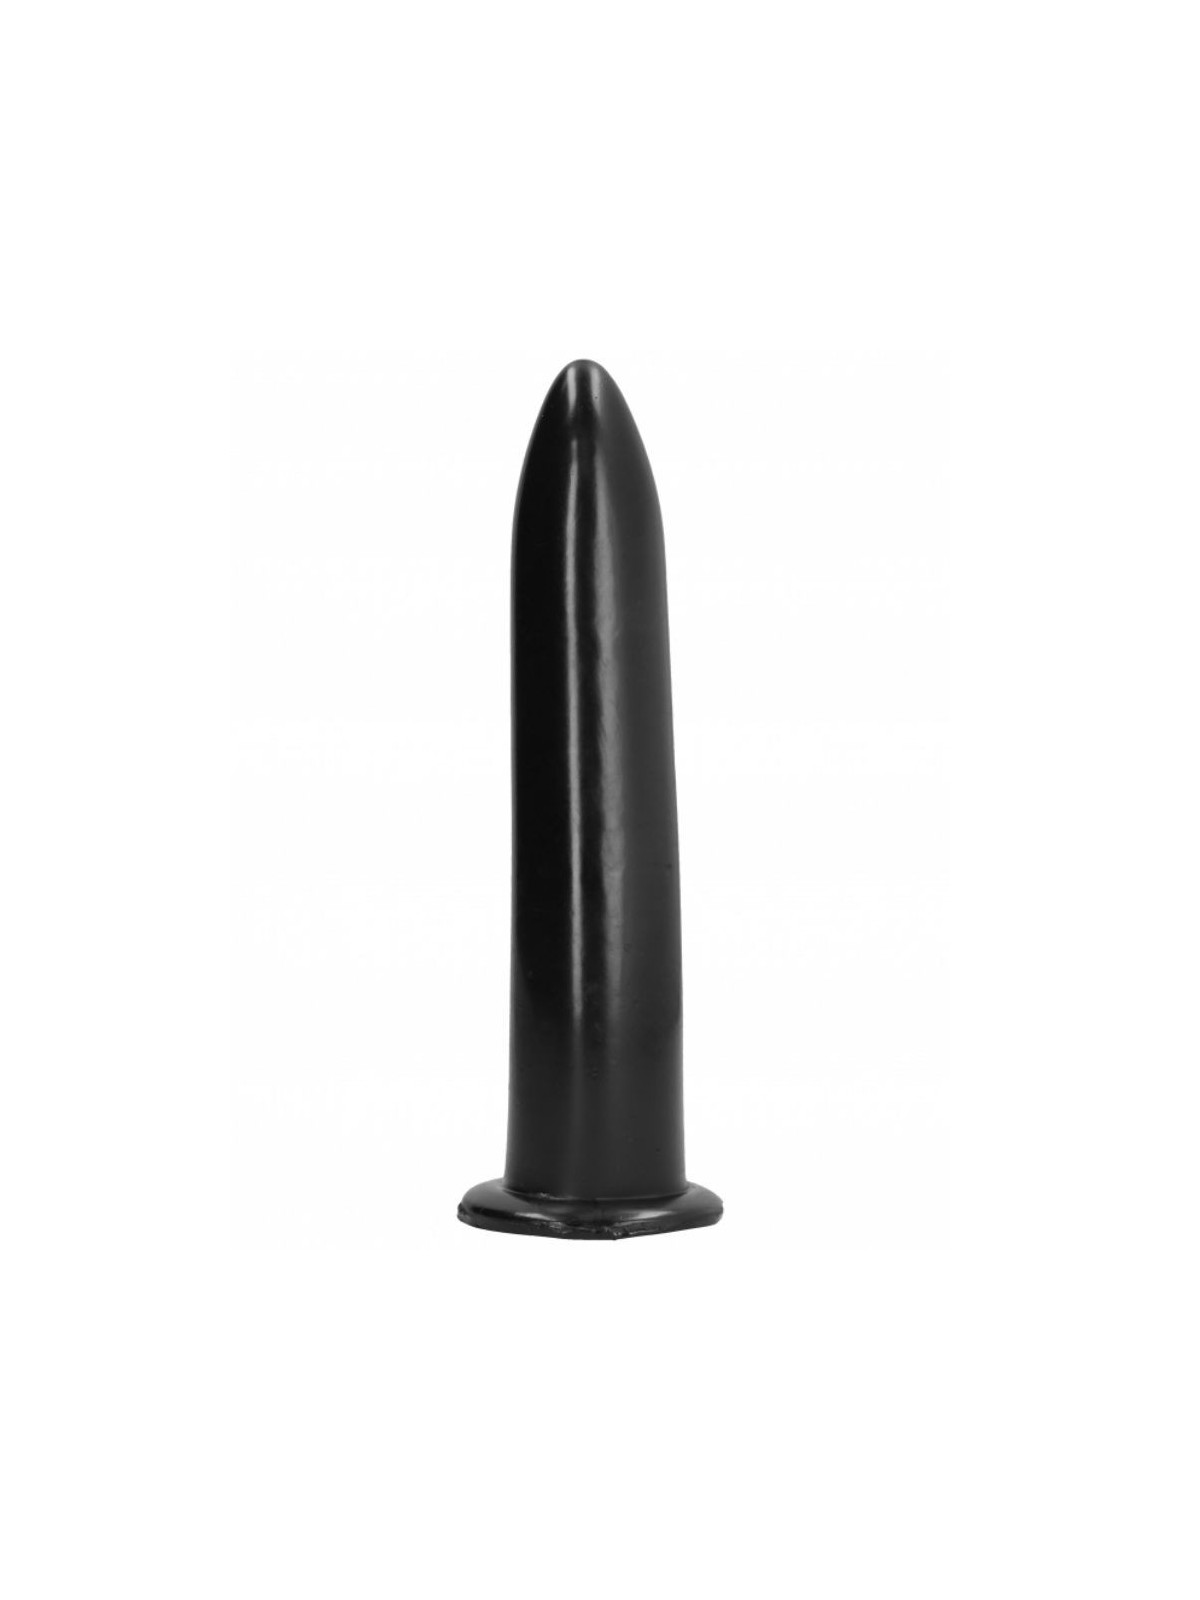 All Black Dilatador Anal & Vaginal 20 cm - Comprar Dildo gigante All Black - Dildos anales (1)